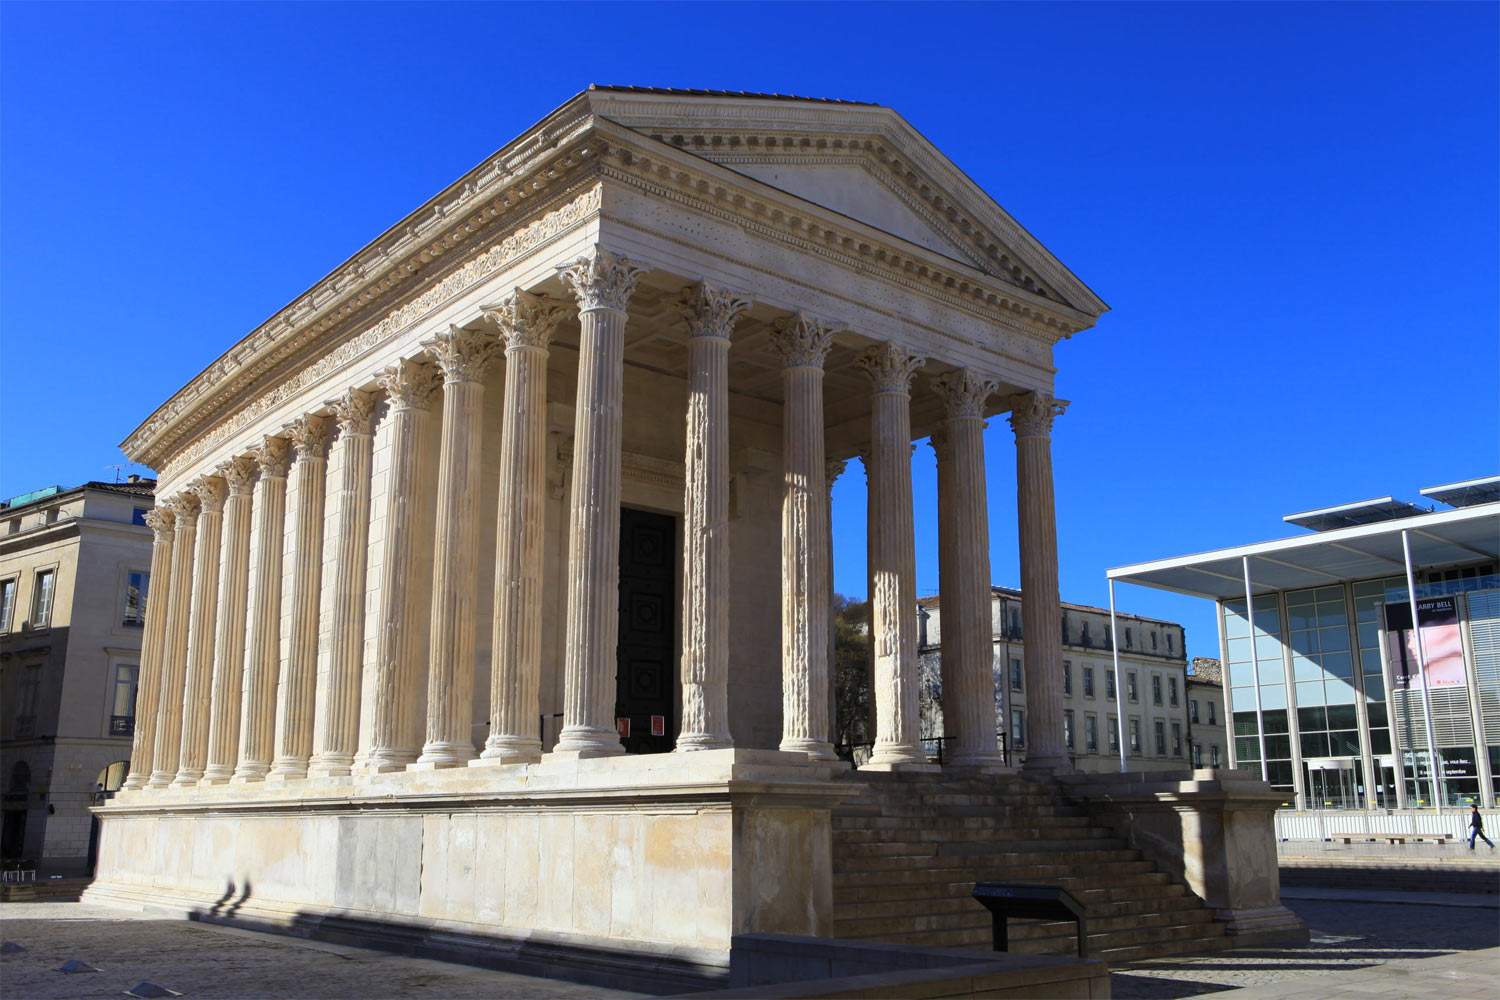 France, NÃ®mes's Maison CarrÃ©e applies for World Heritage Site status